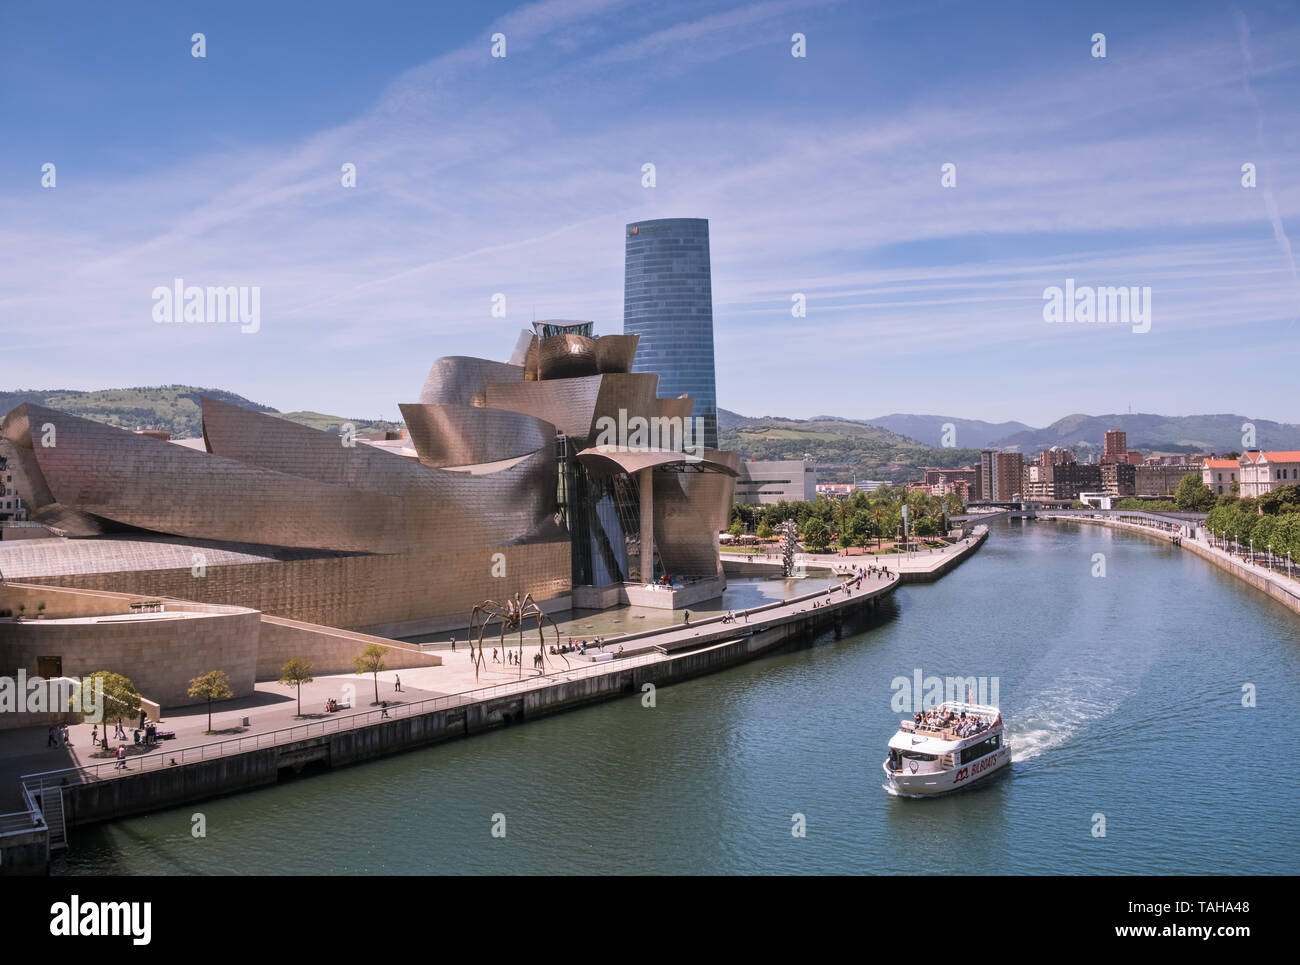 Vue de la ville de Bilbao, Pays Basque, Espagne, avec le Musée Guggenheim et la rivière Nervion Banque D'Images